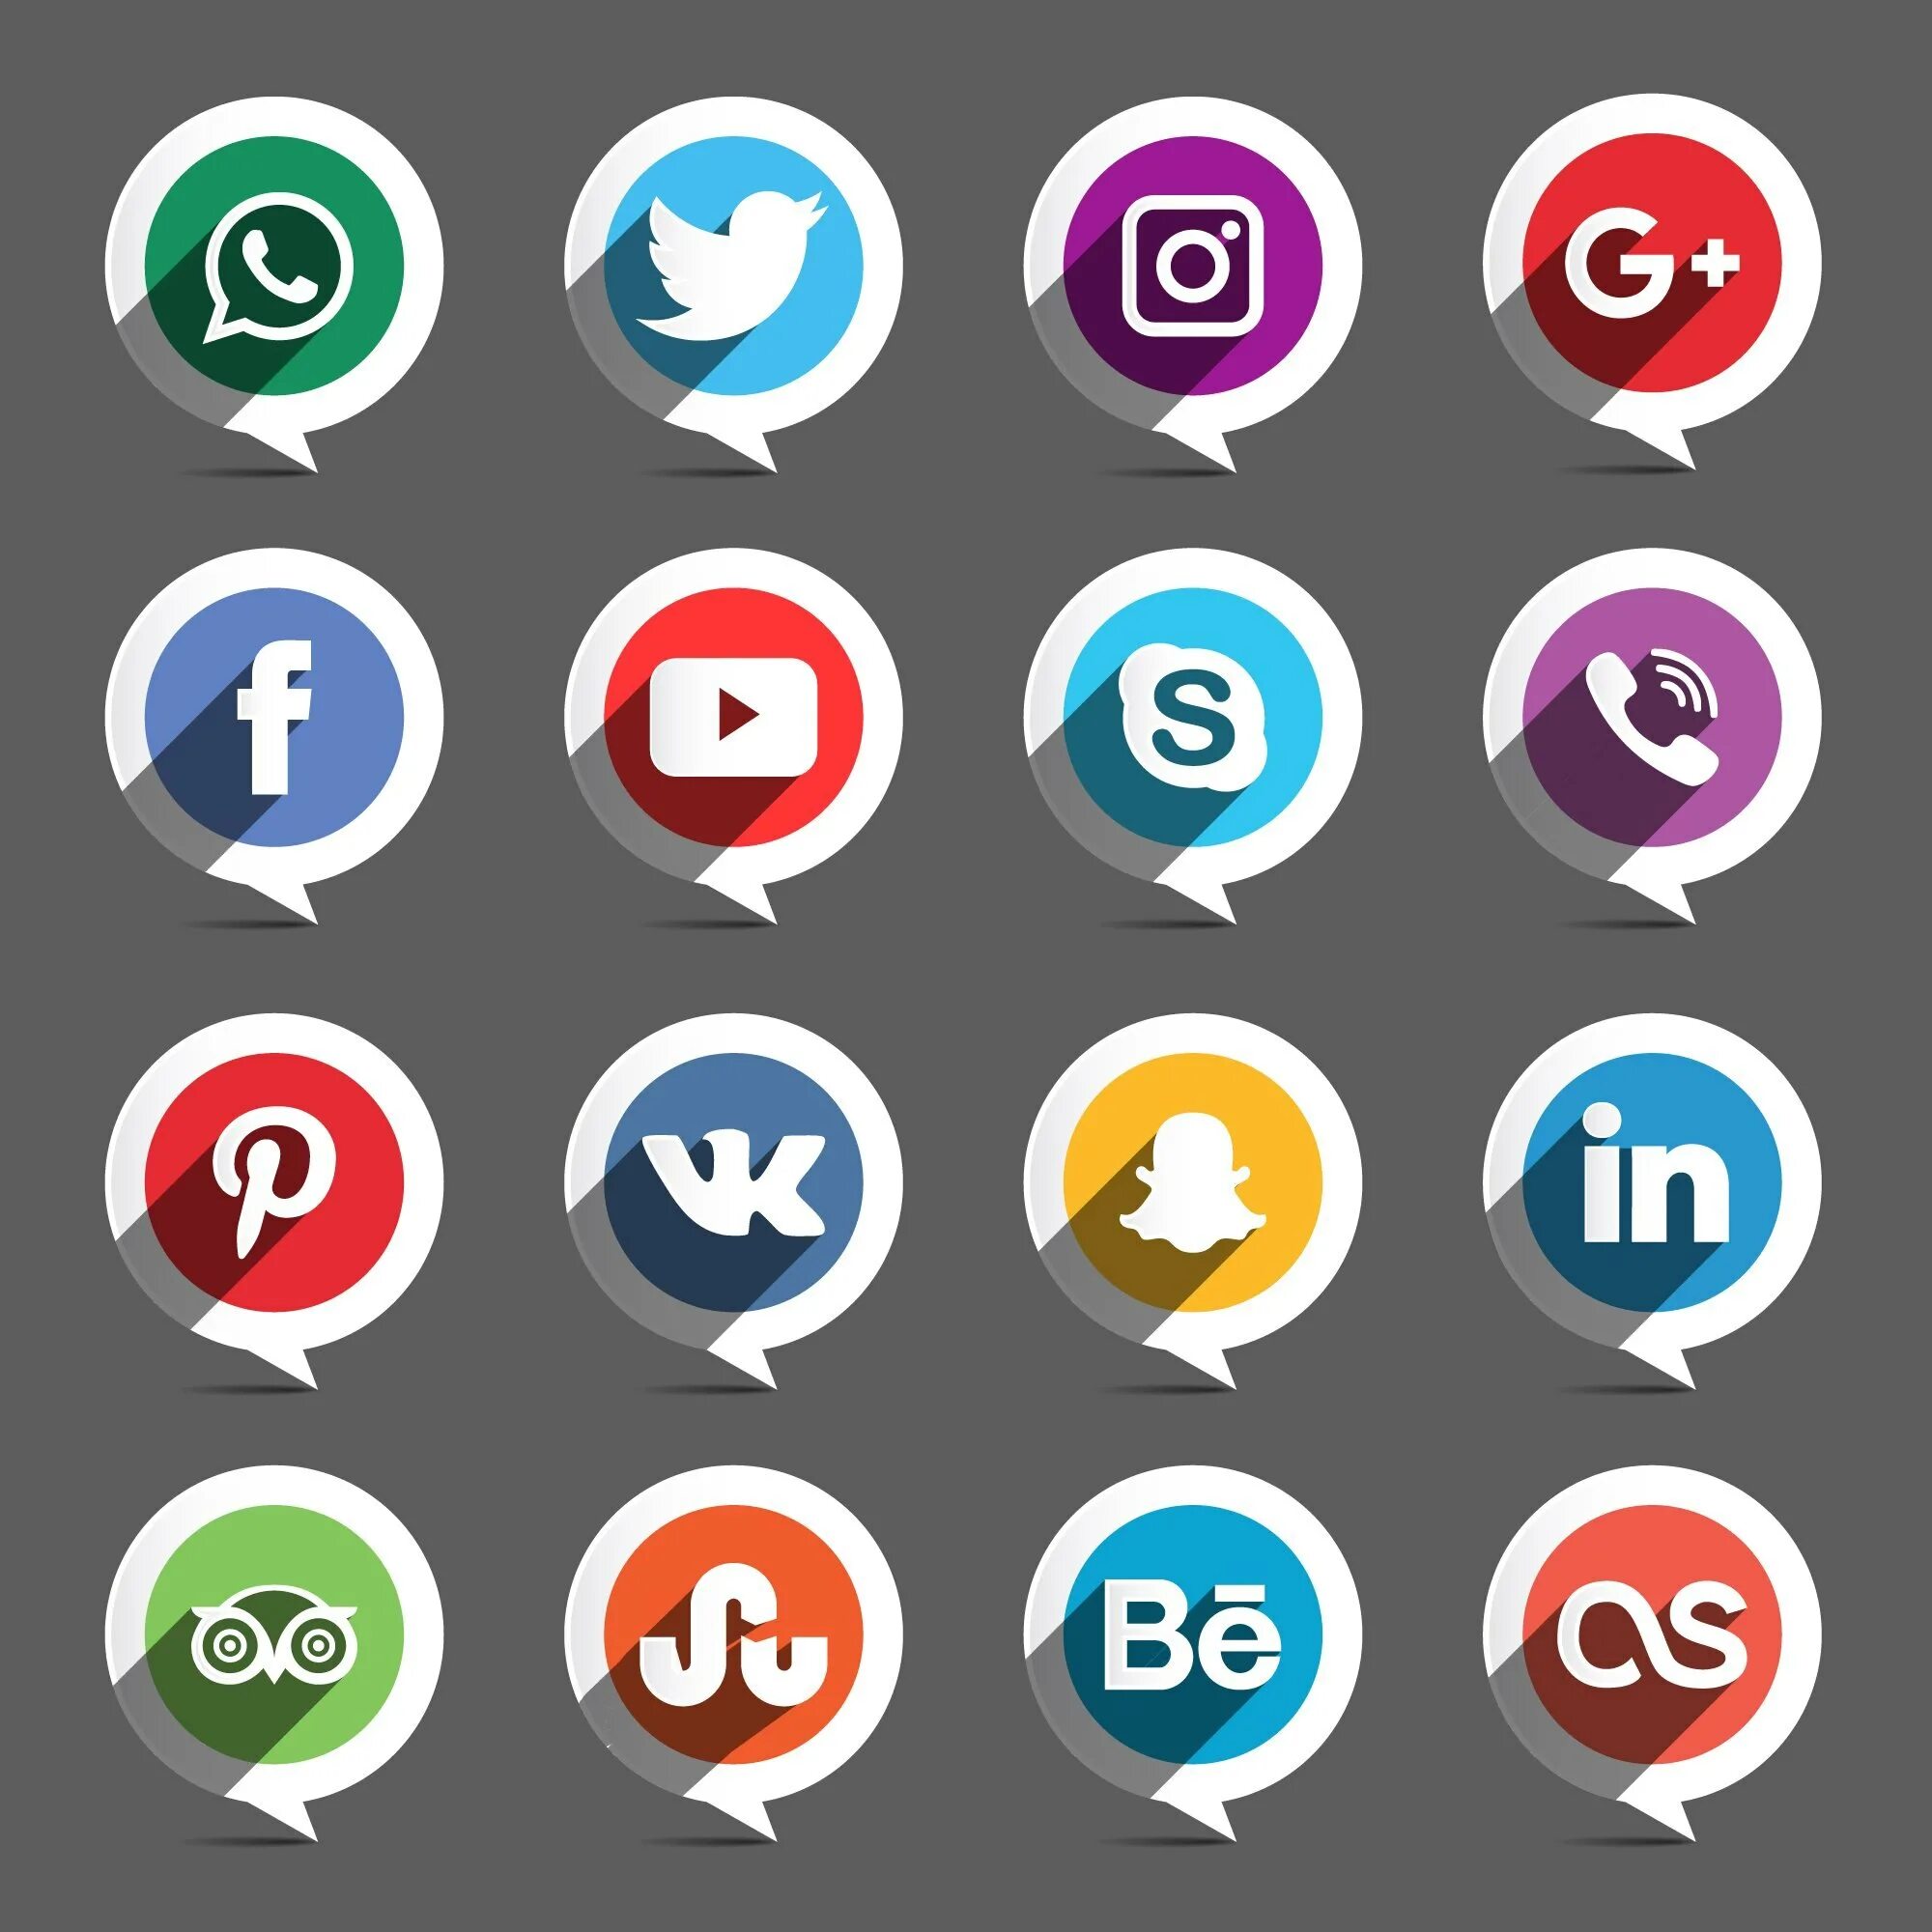 Social icons